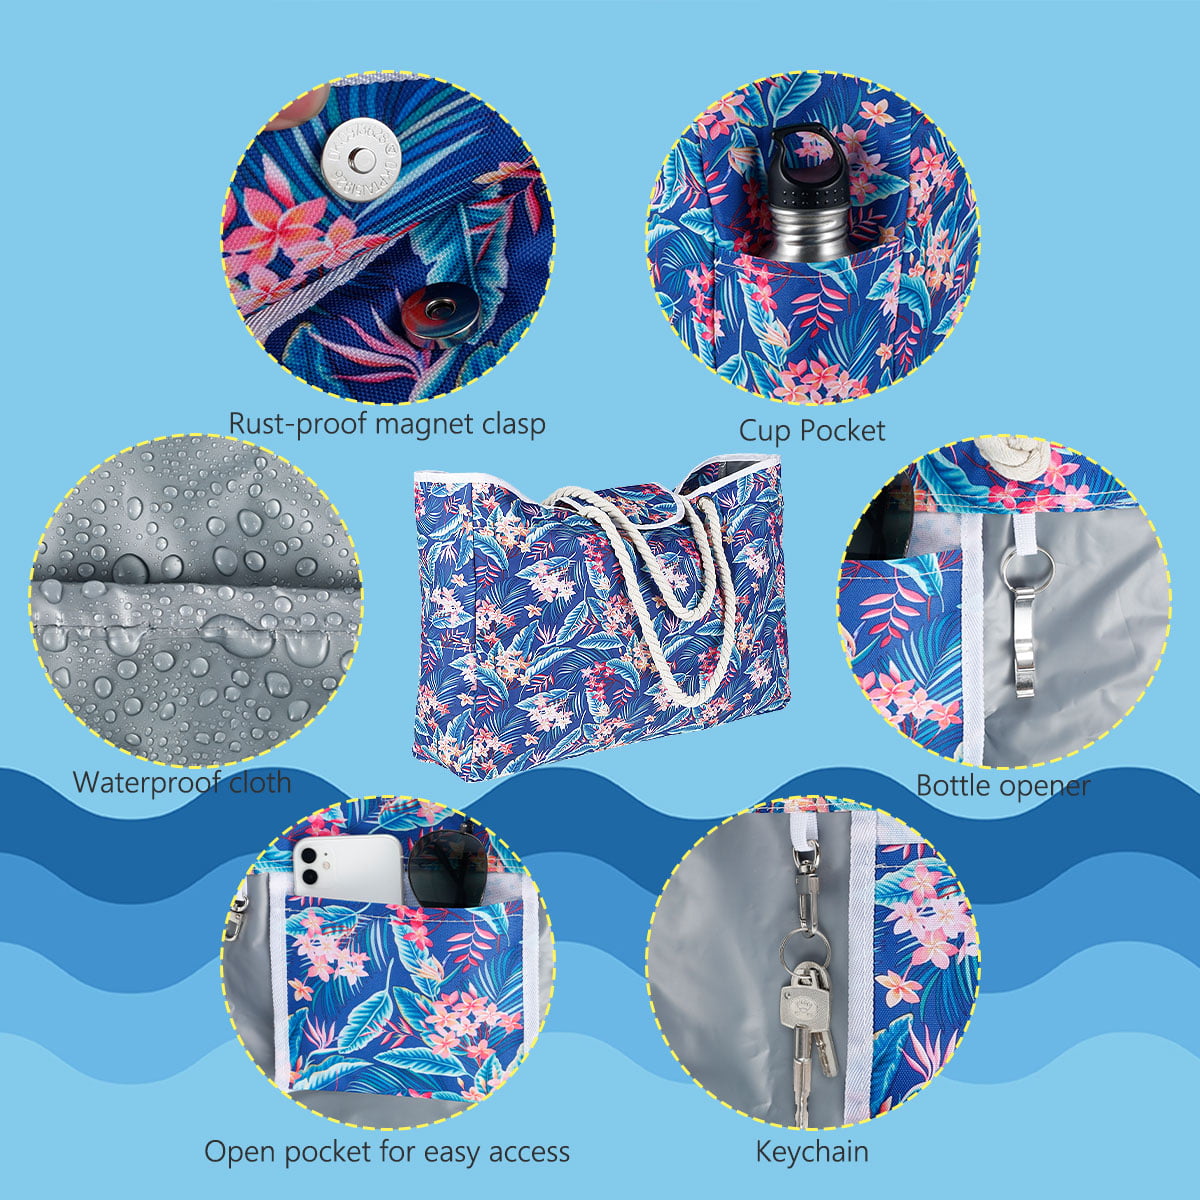 Inflatable Beach Tote Bag - Reversible Multi Colors Bags, Multifunctional,  Waterproof, Large Capacity Tote Bag for Pool, Beach, Travel (Live, Laugh